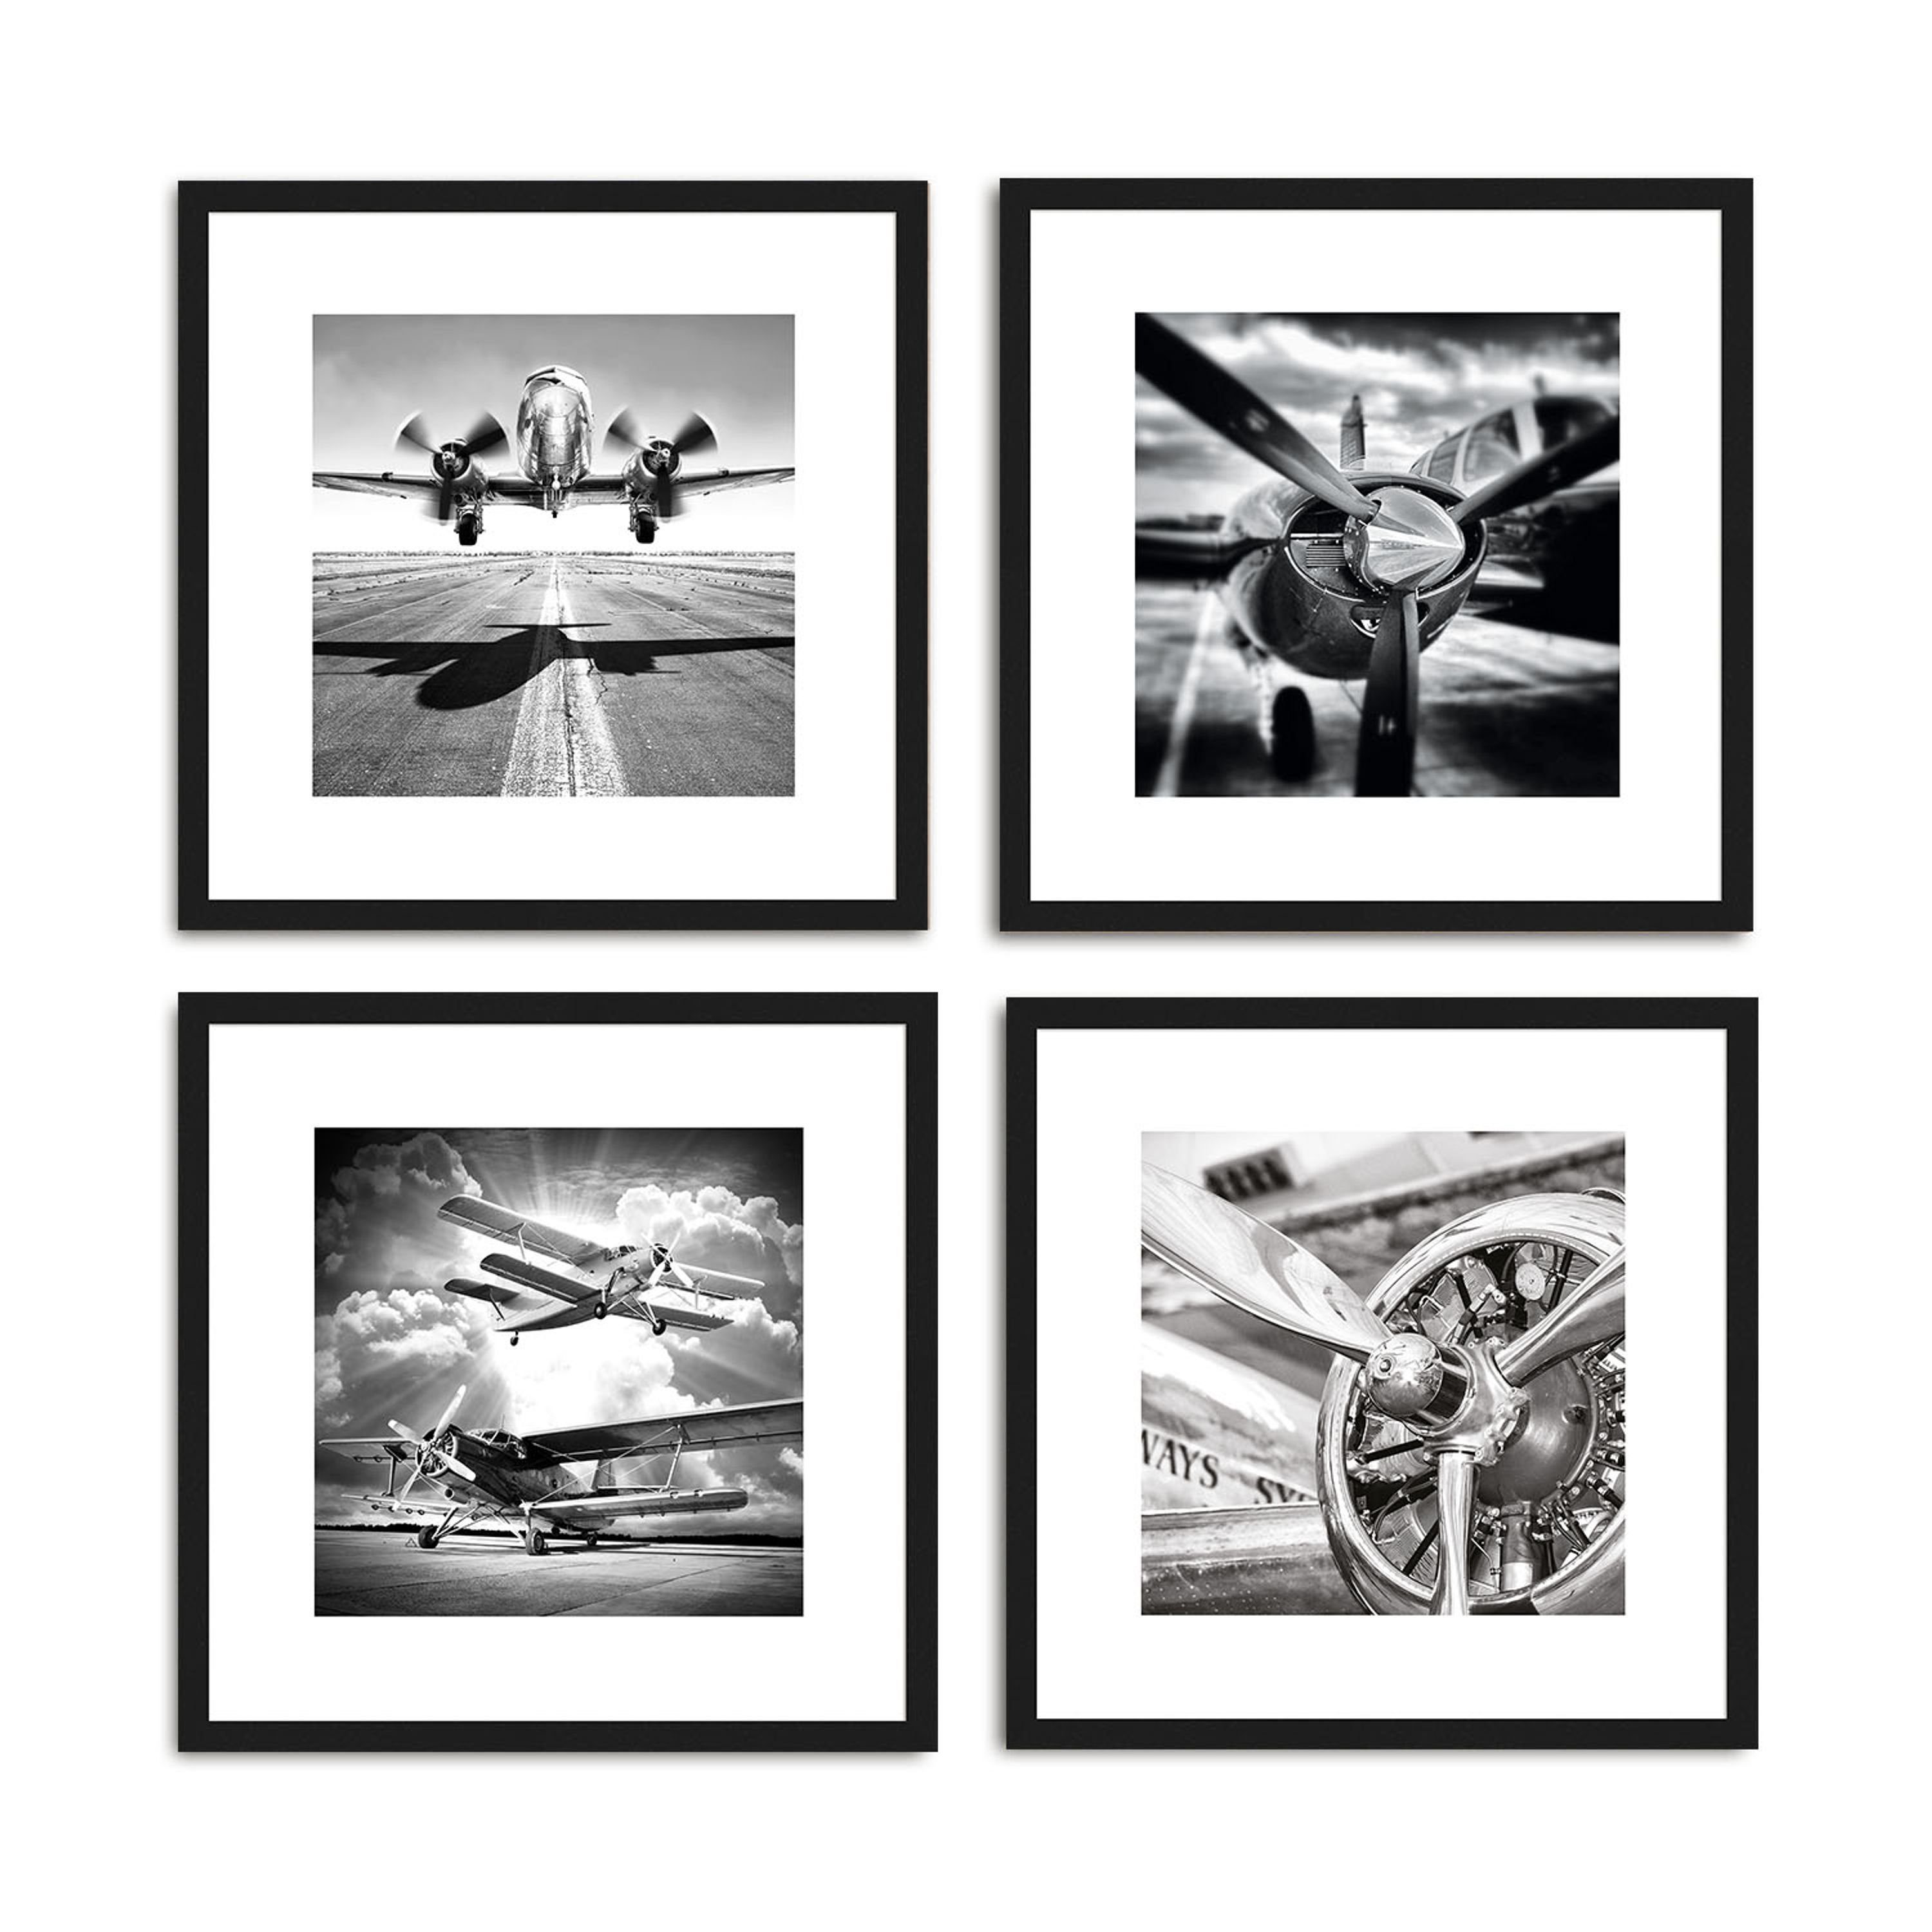 Holz-Rahmen Bild / Rahmen 30x30cm I Wandbild, / Bild Schwarz-Weiß Design-Poster gerahmt Zeichnung: Flugzeuge artissimo mit inkl.